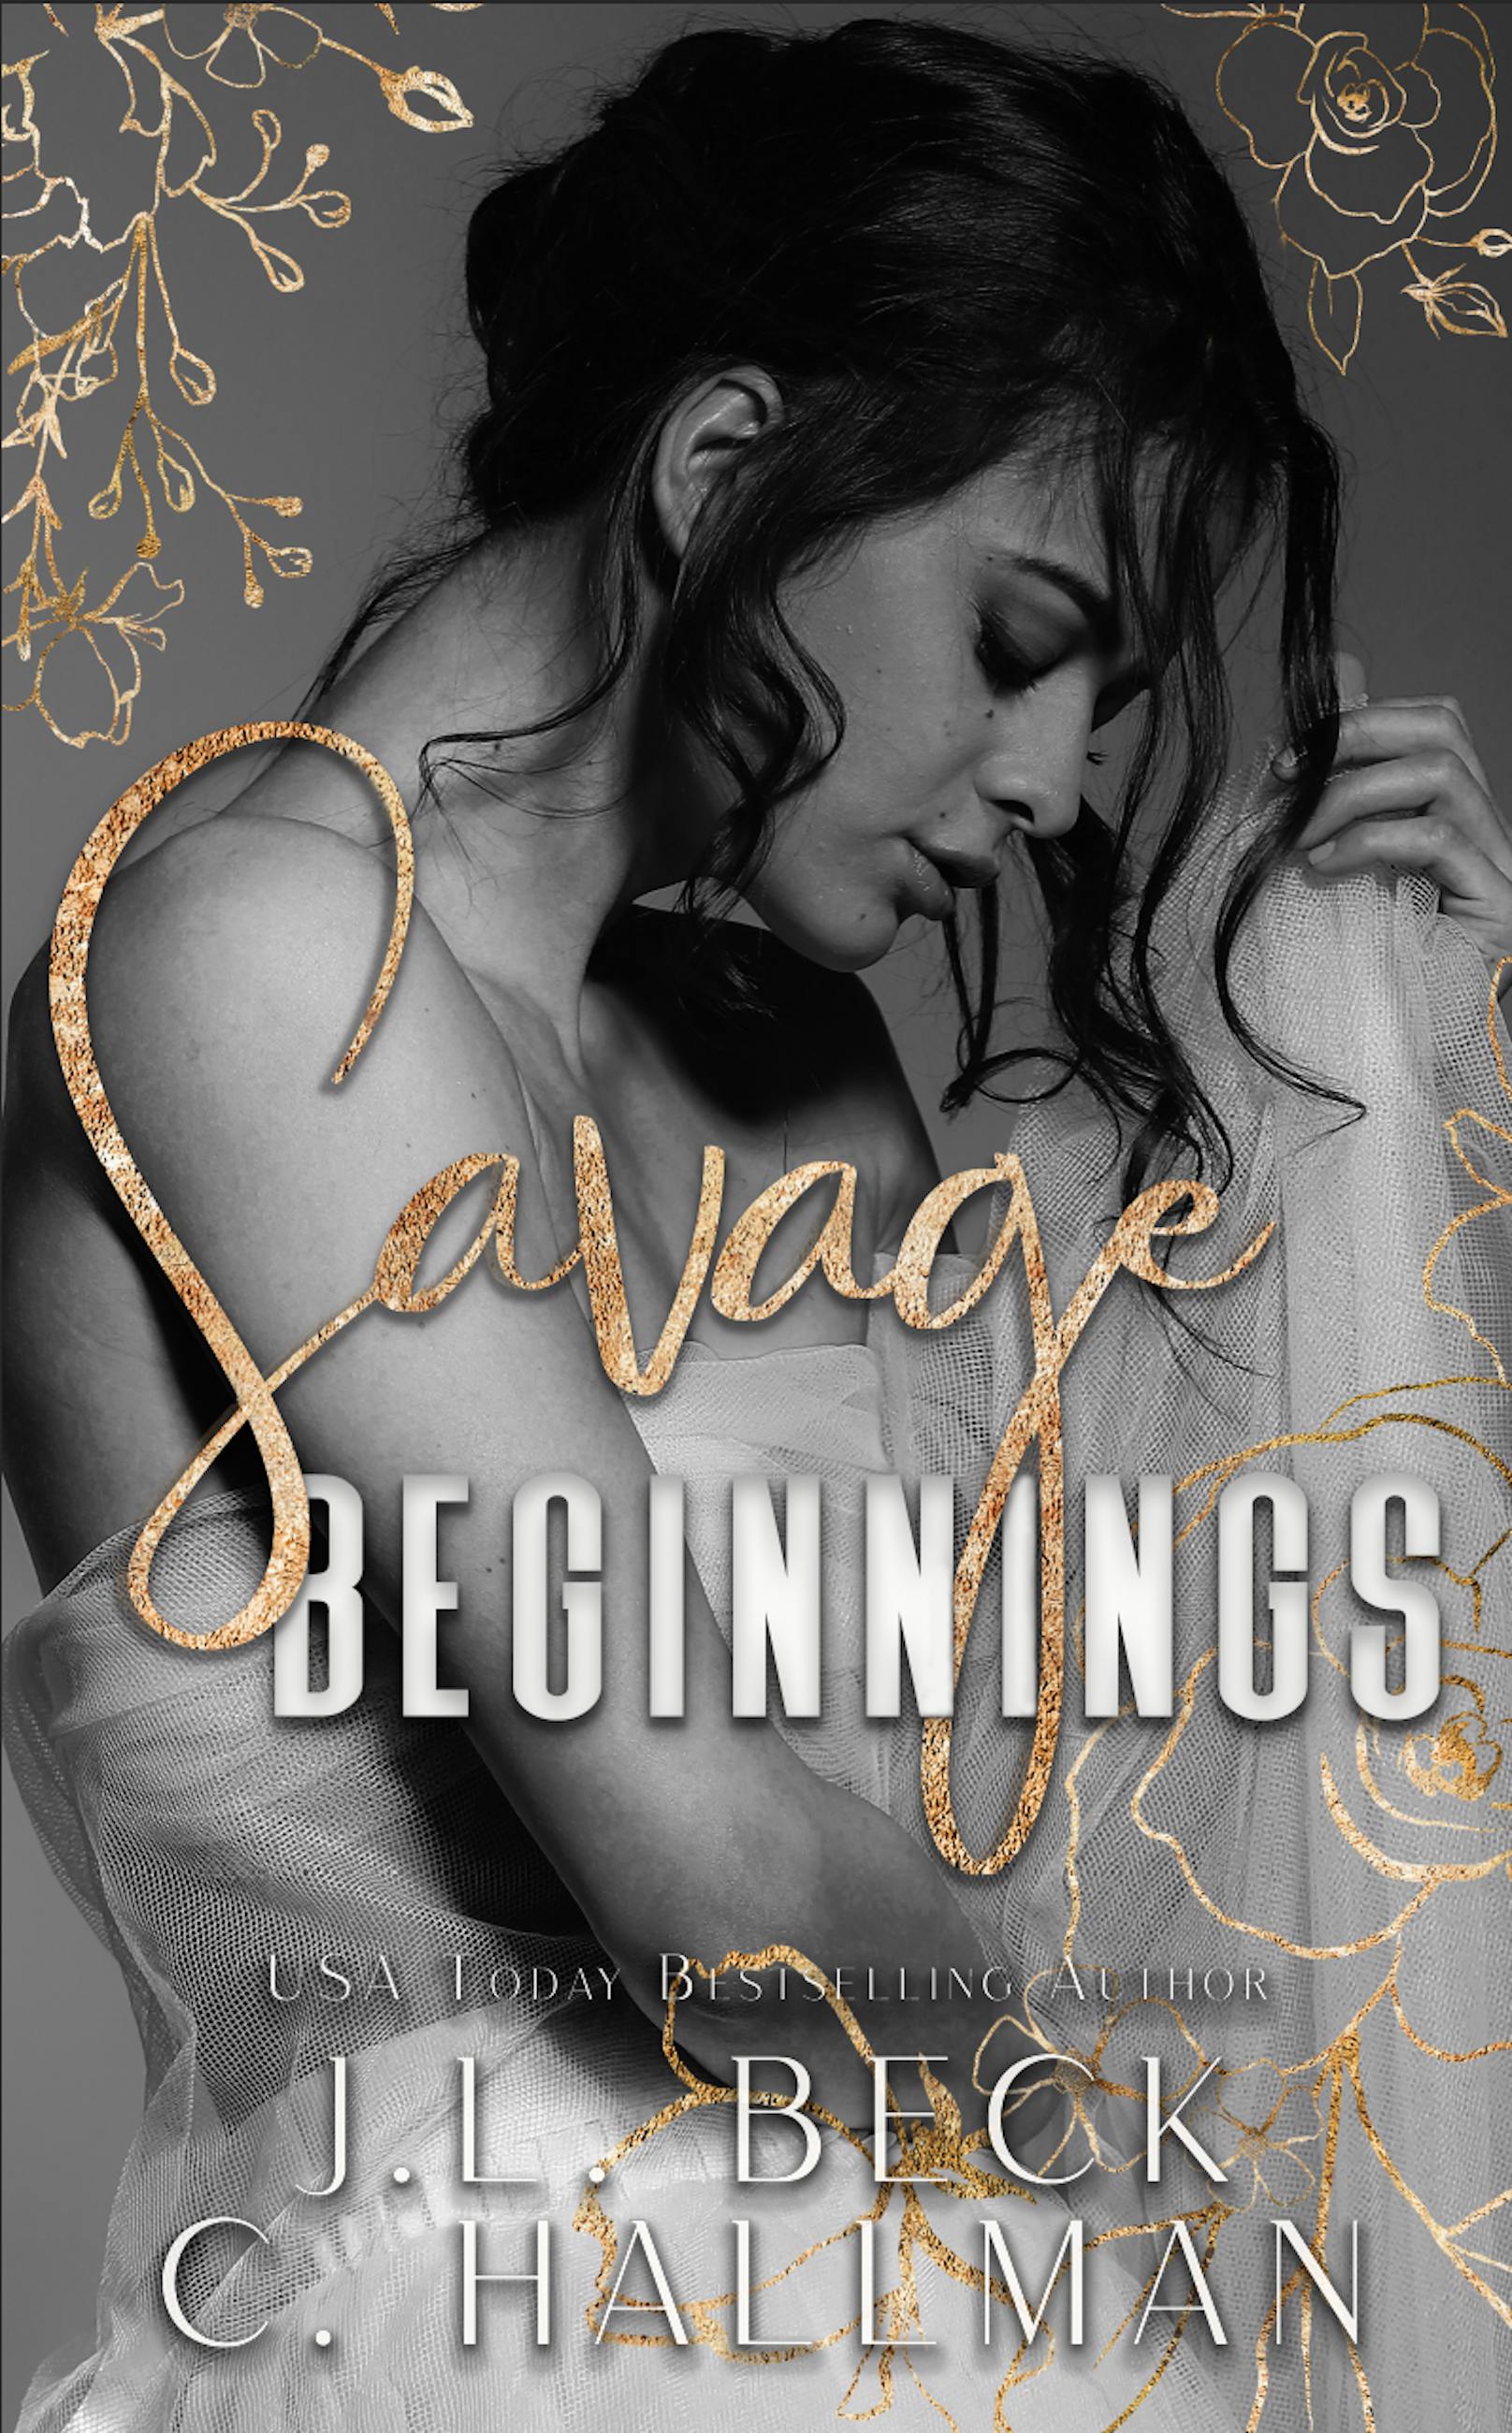 Savage Beginnings By J.L. Beck